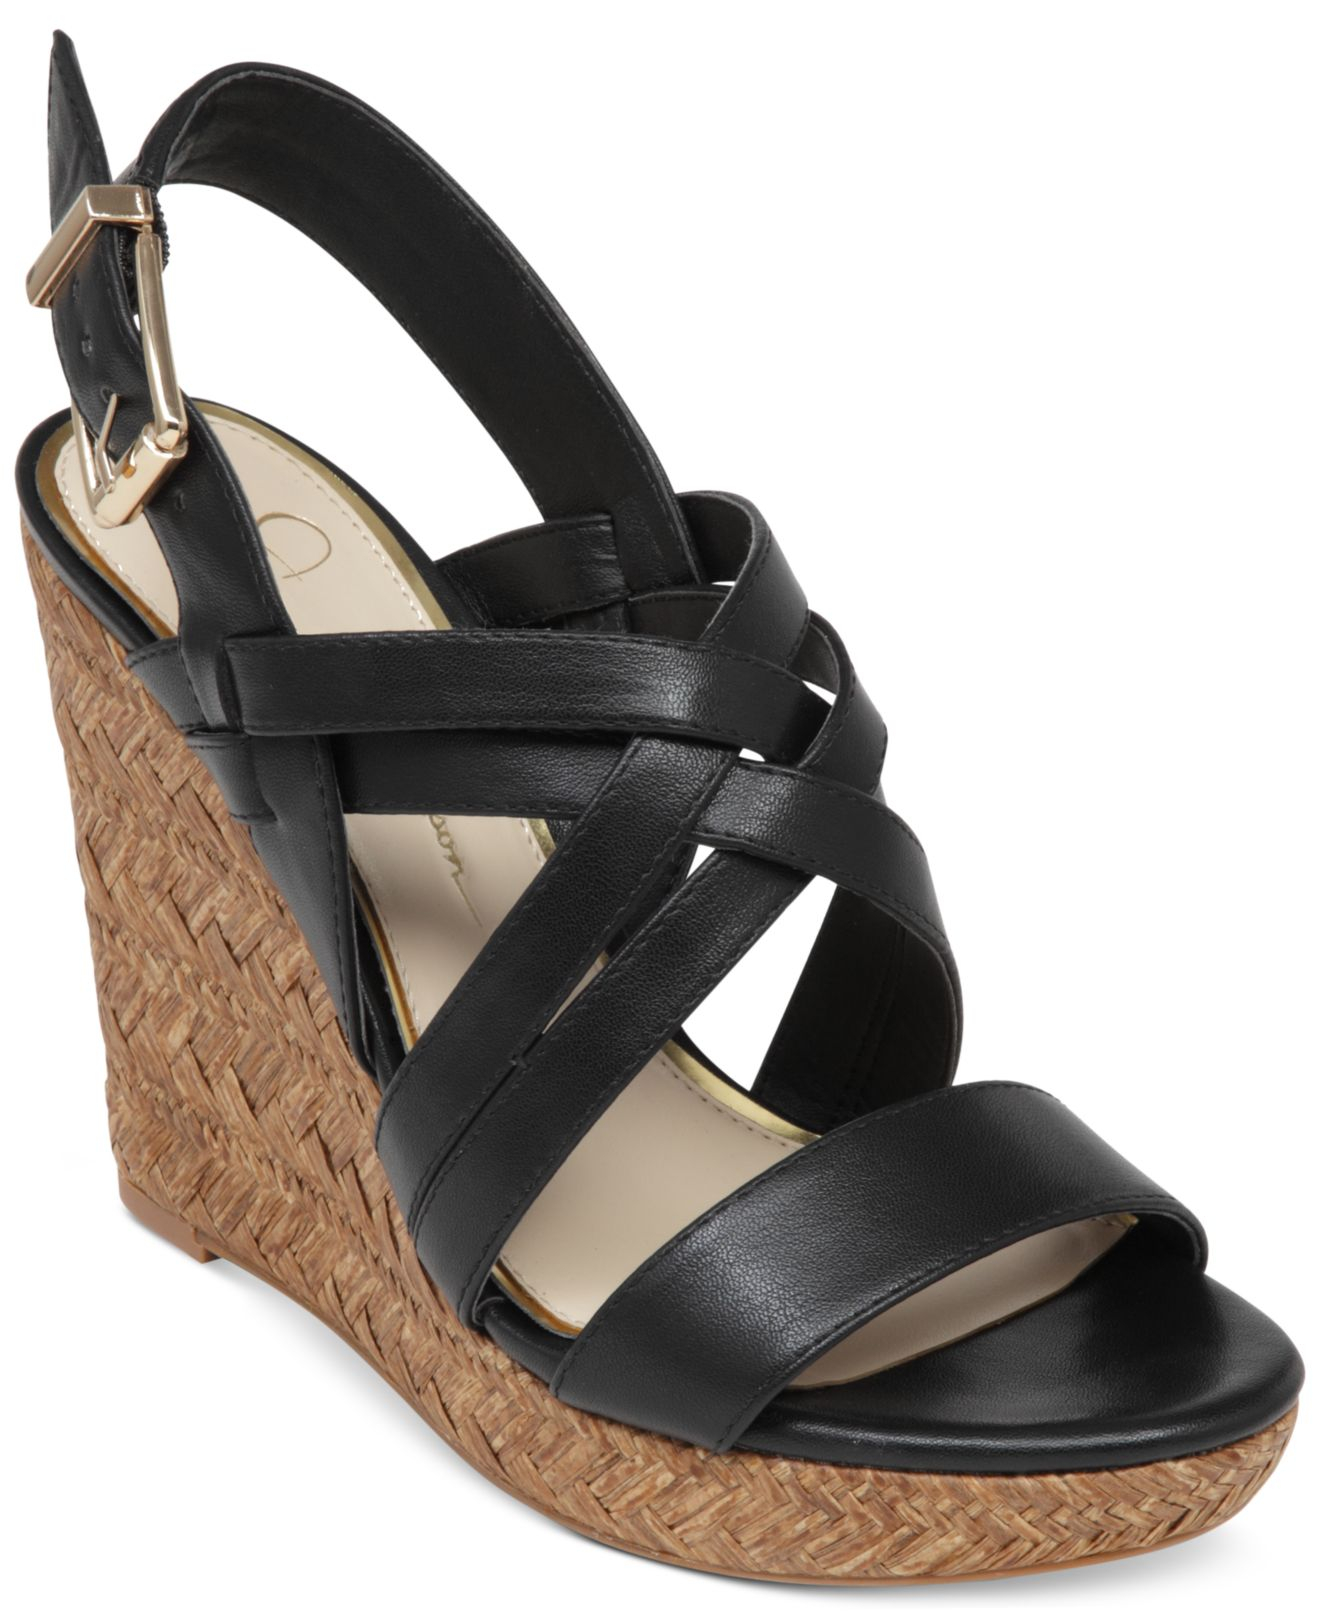 Lyst - Jessica Simpson Julita Platform Wedge Sandals in Black